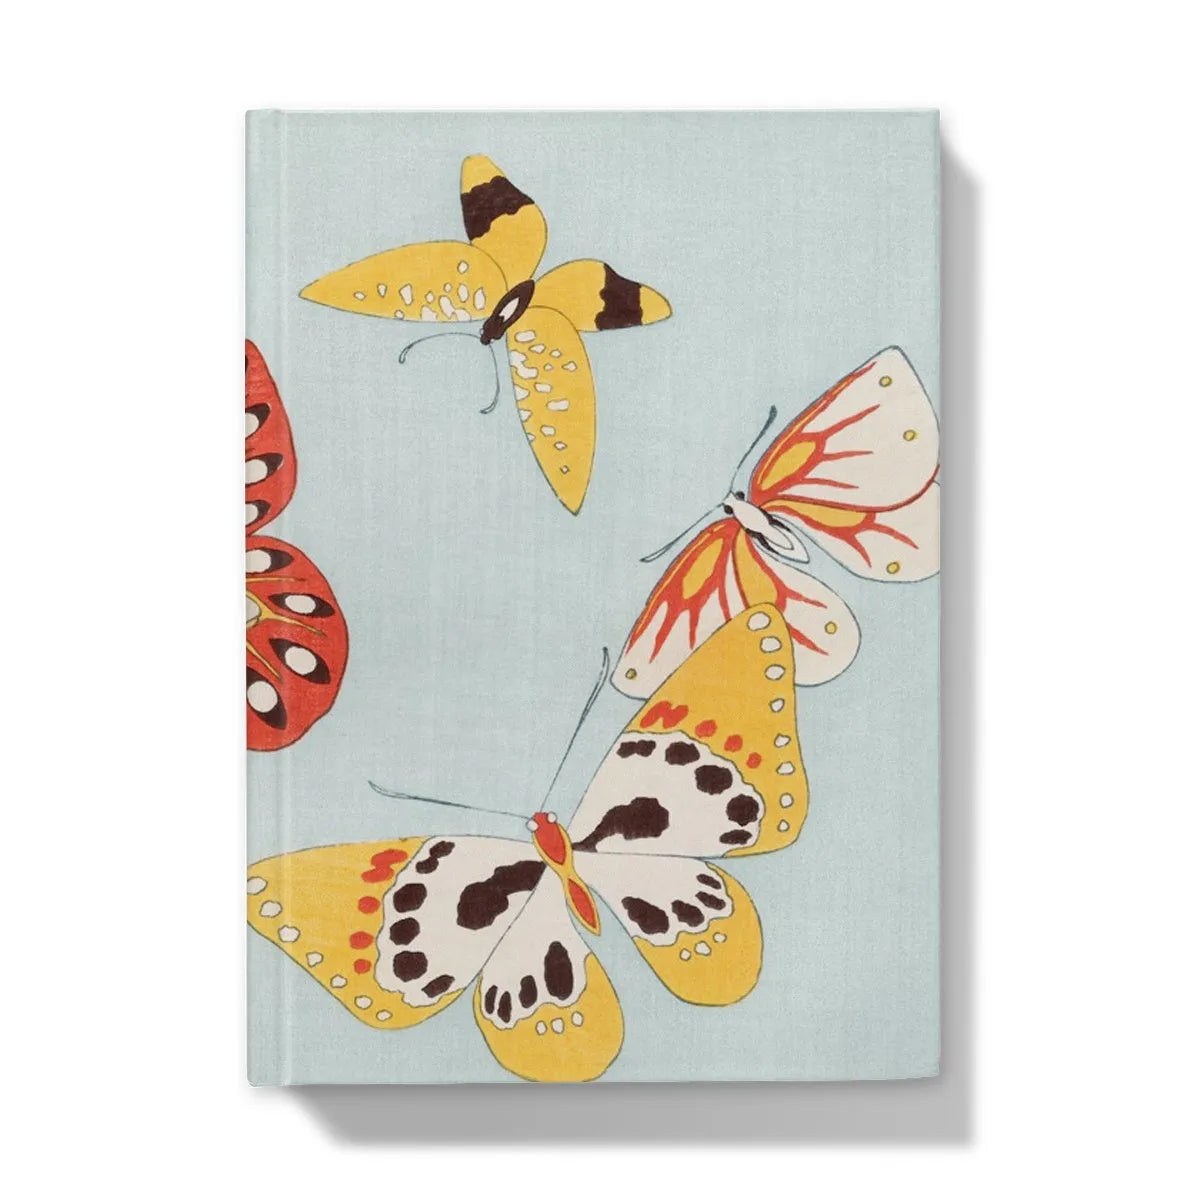 Japanese Summer Colors Butterflies By Kamisaka Sekka Hardback Journal - 5’x7’ / Lined - Notebooks & Notepads